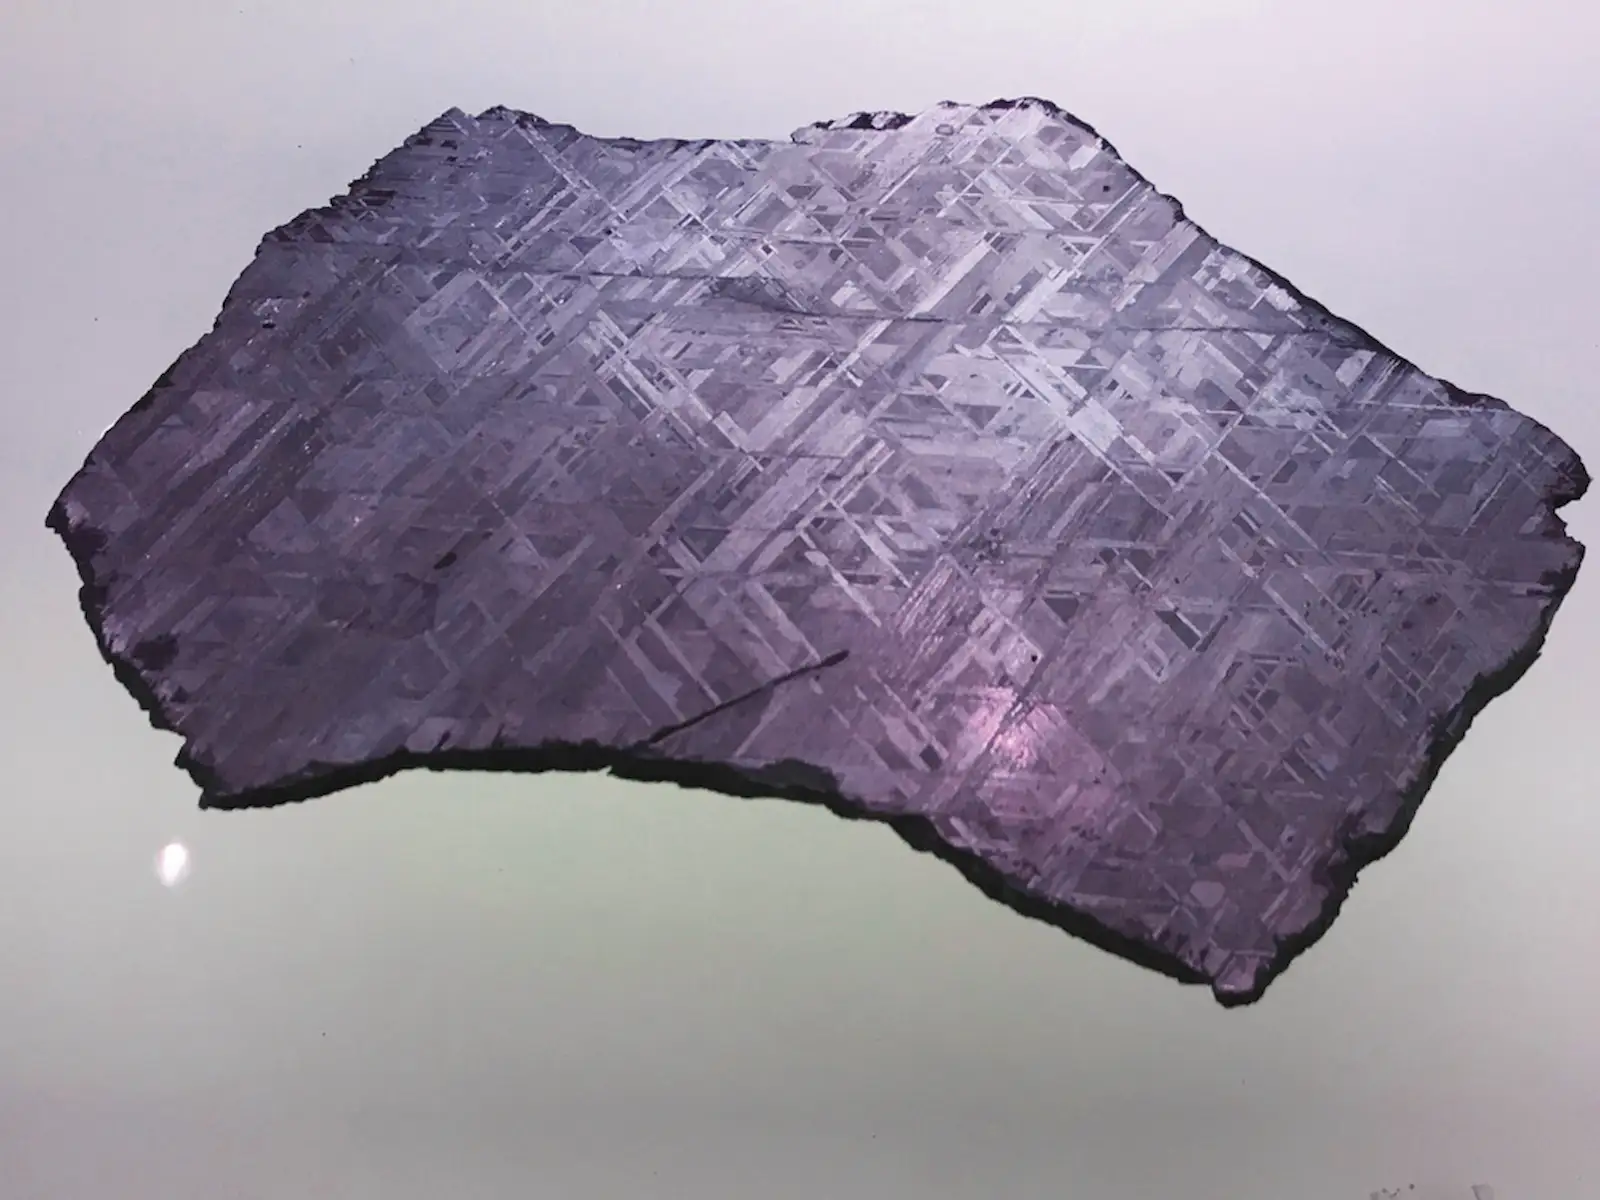 widmanstätten patterns on iron meteorite